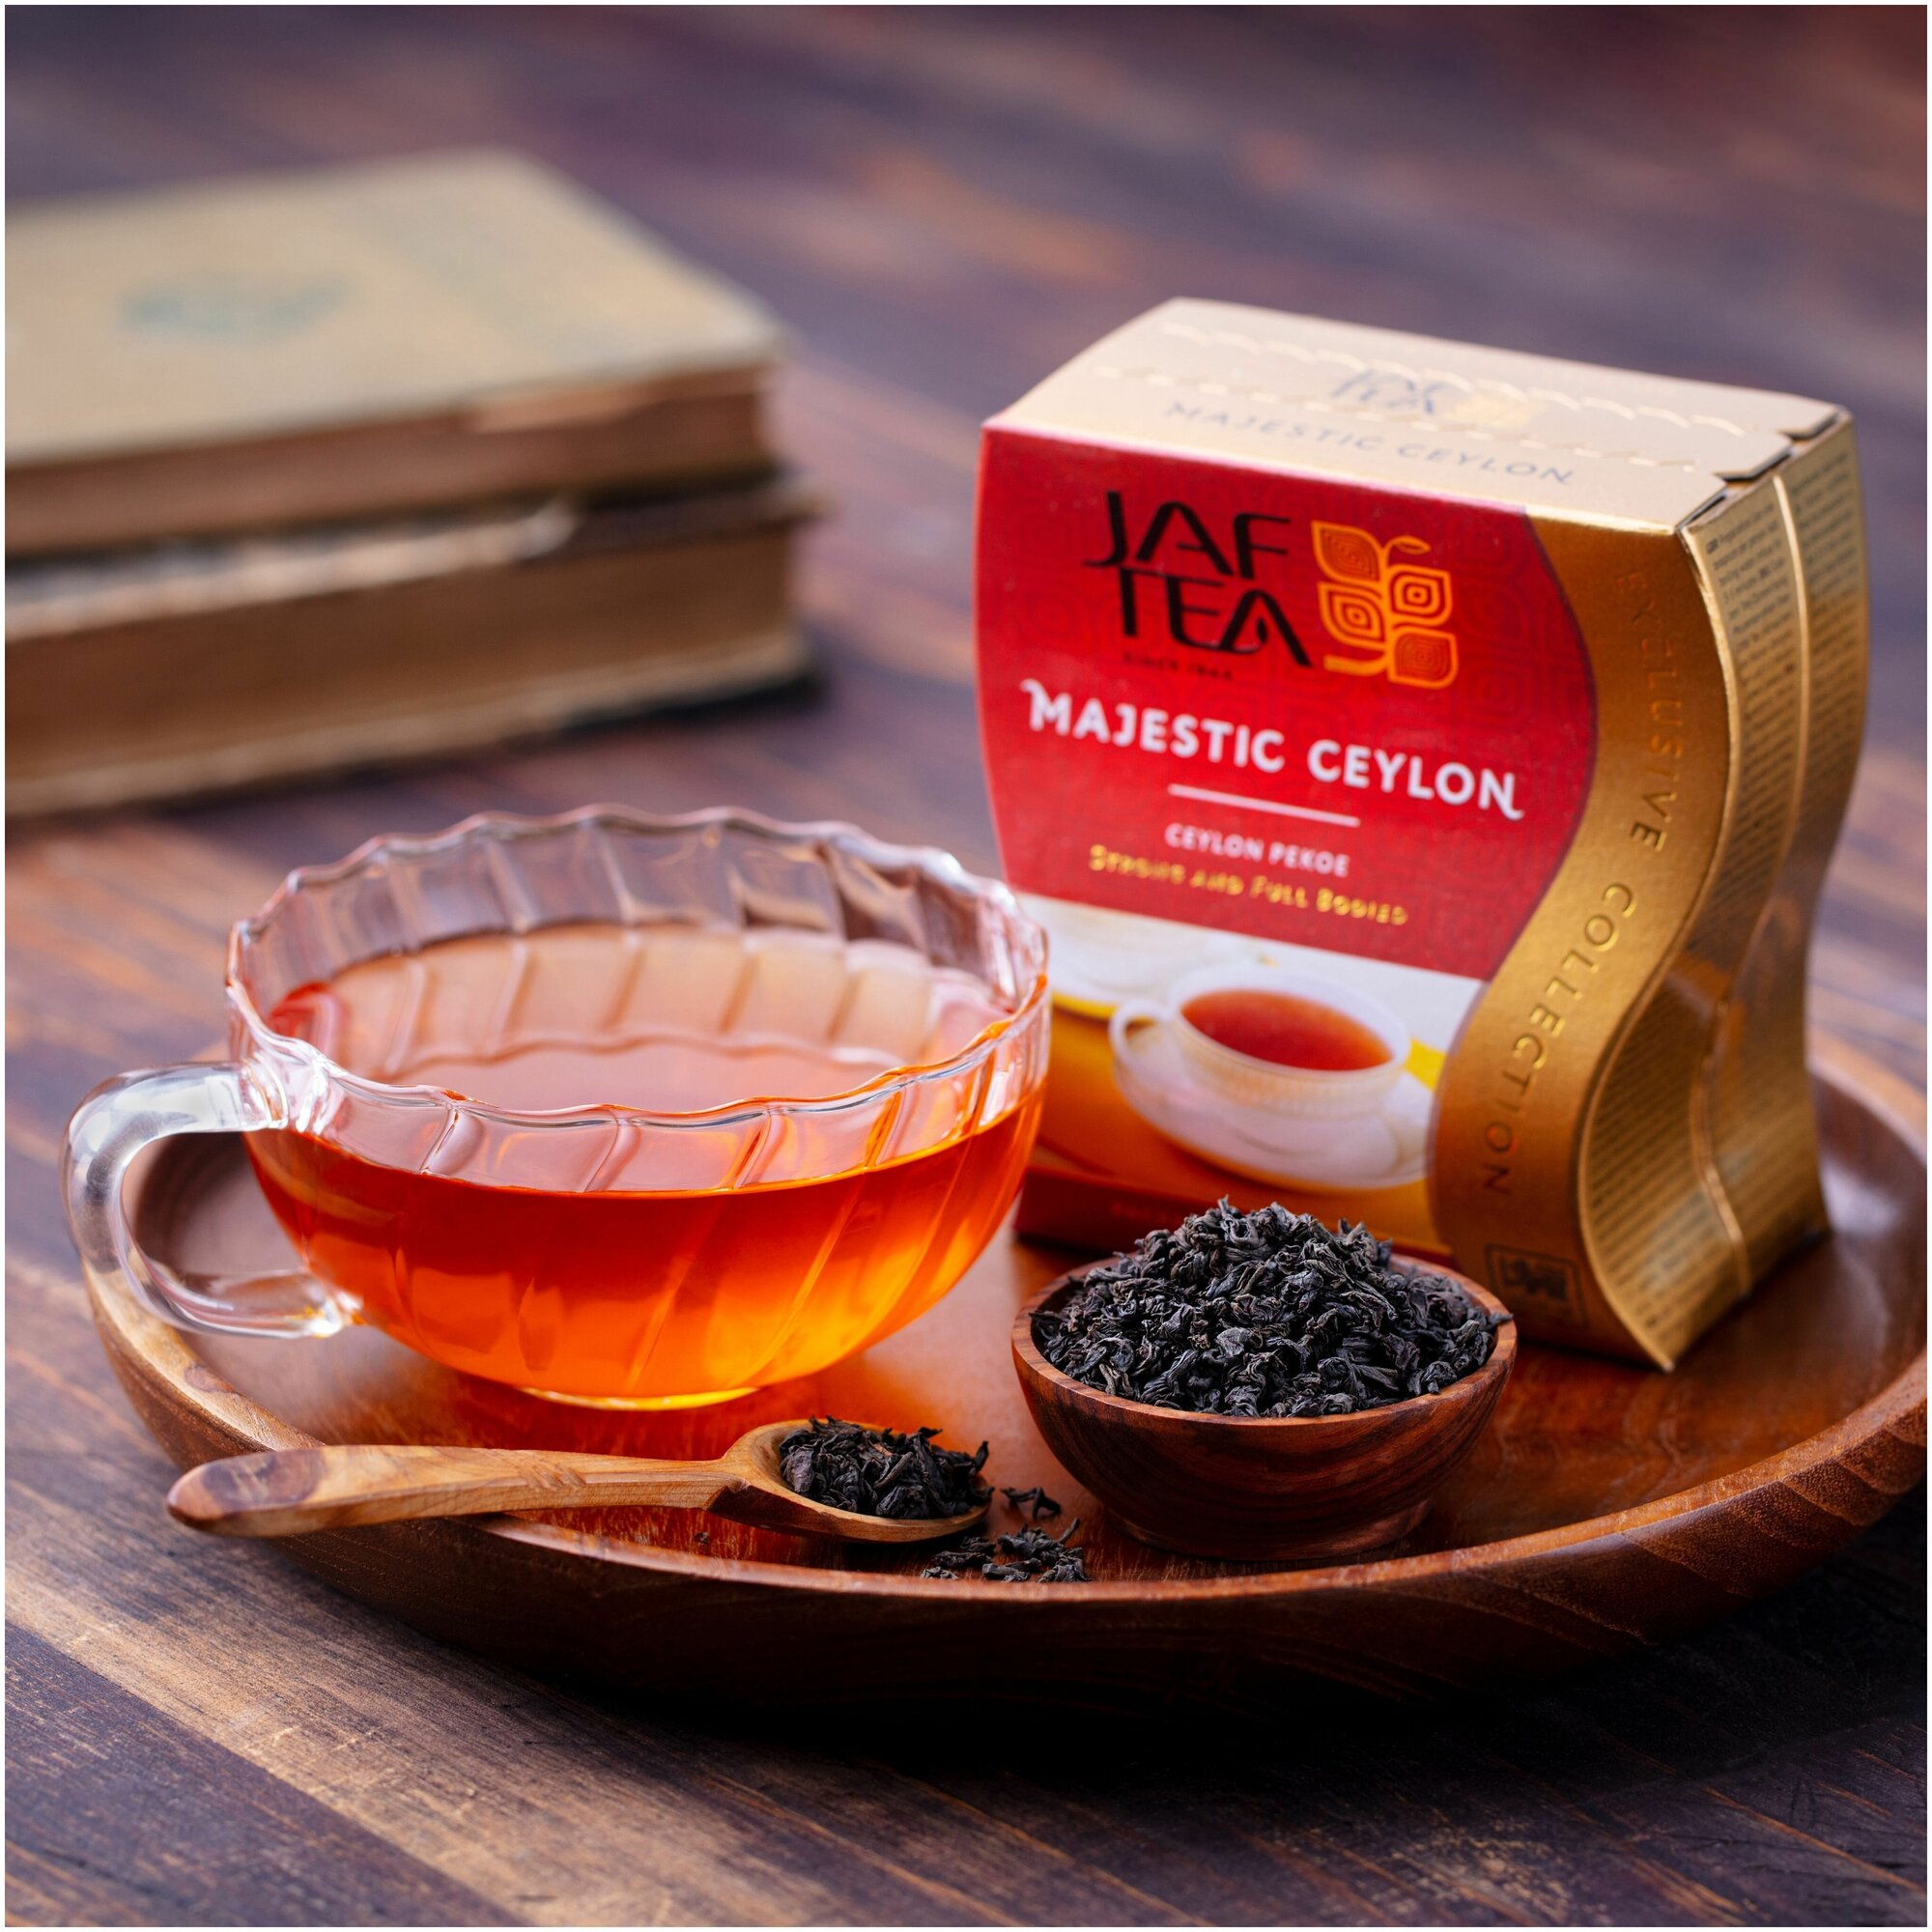 Чай чёрный JAF TEA Majestic Ceylon листовой сорт Pekoe, 100 г.